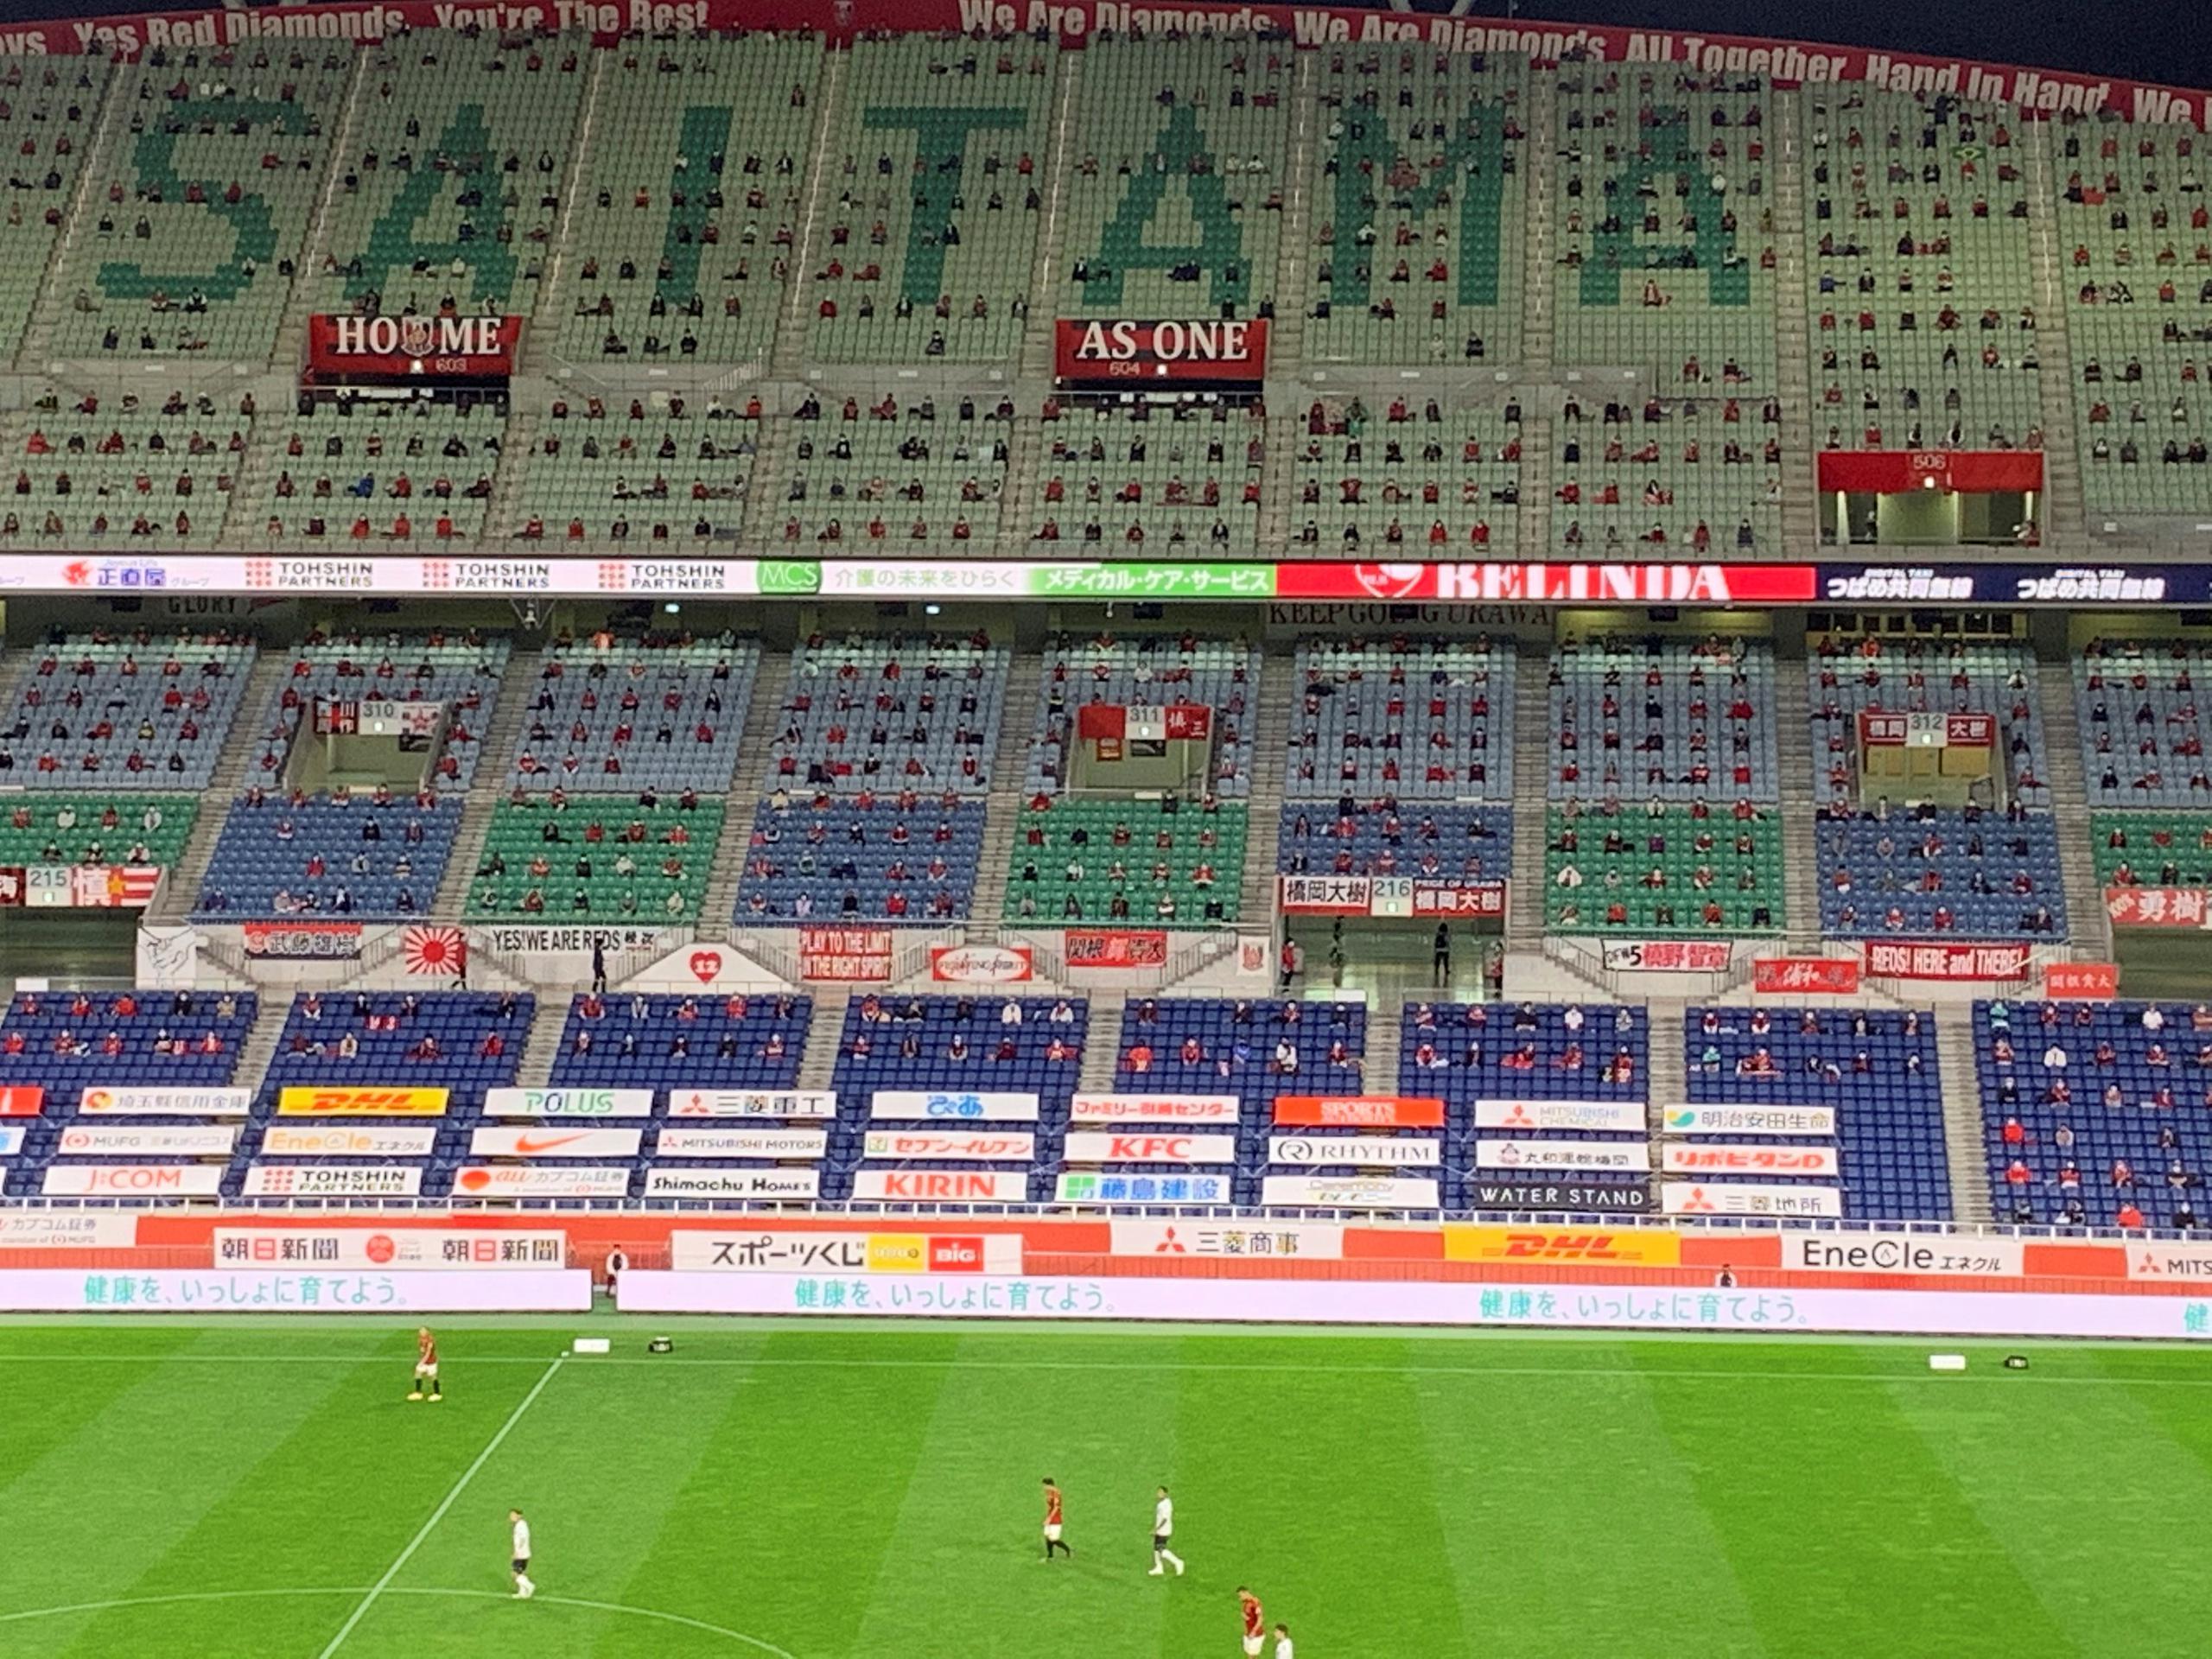 Unos 7,000 espectadores contemplan en silencio y con distancia social el partido Urawa Reds - Yokohama FC de la liga nipona de fútbol disputado este sábado en el Estadio de Saitama.